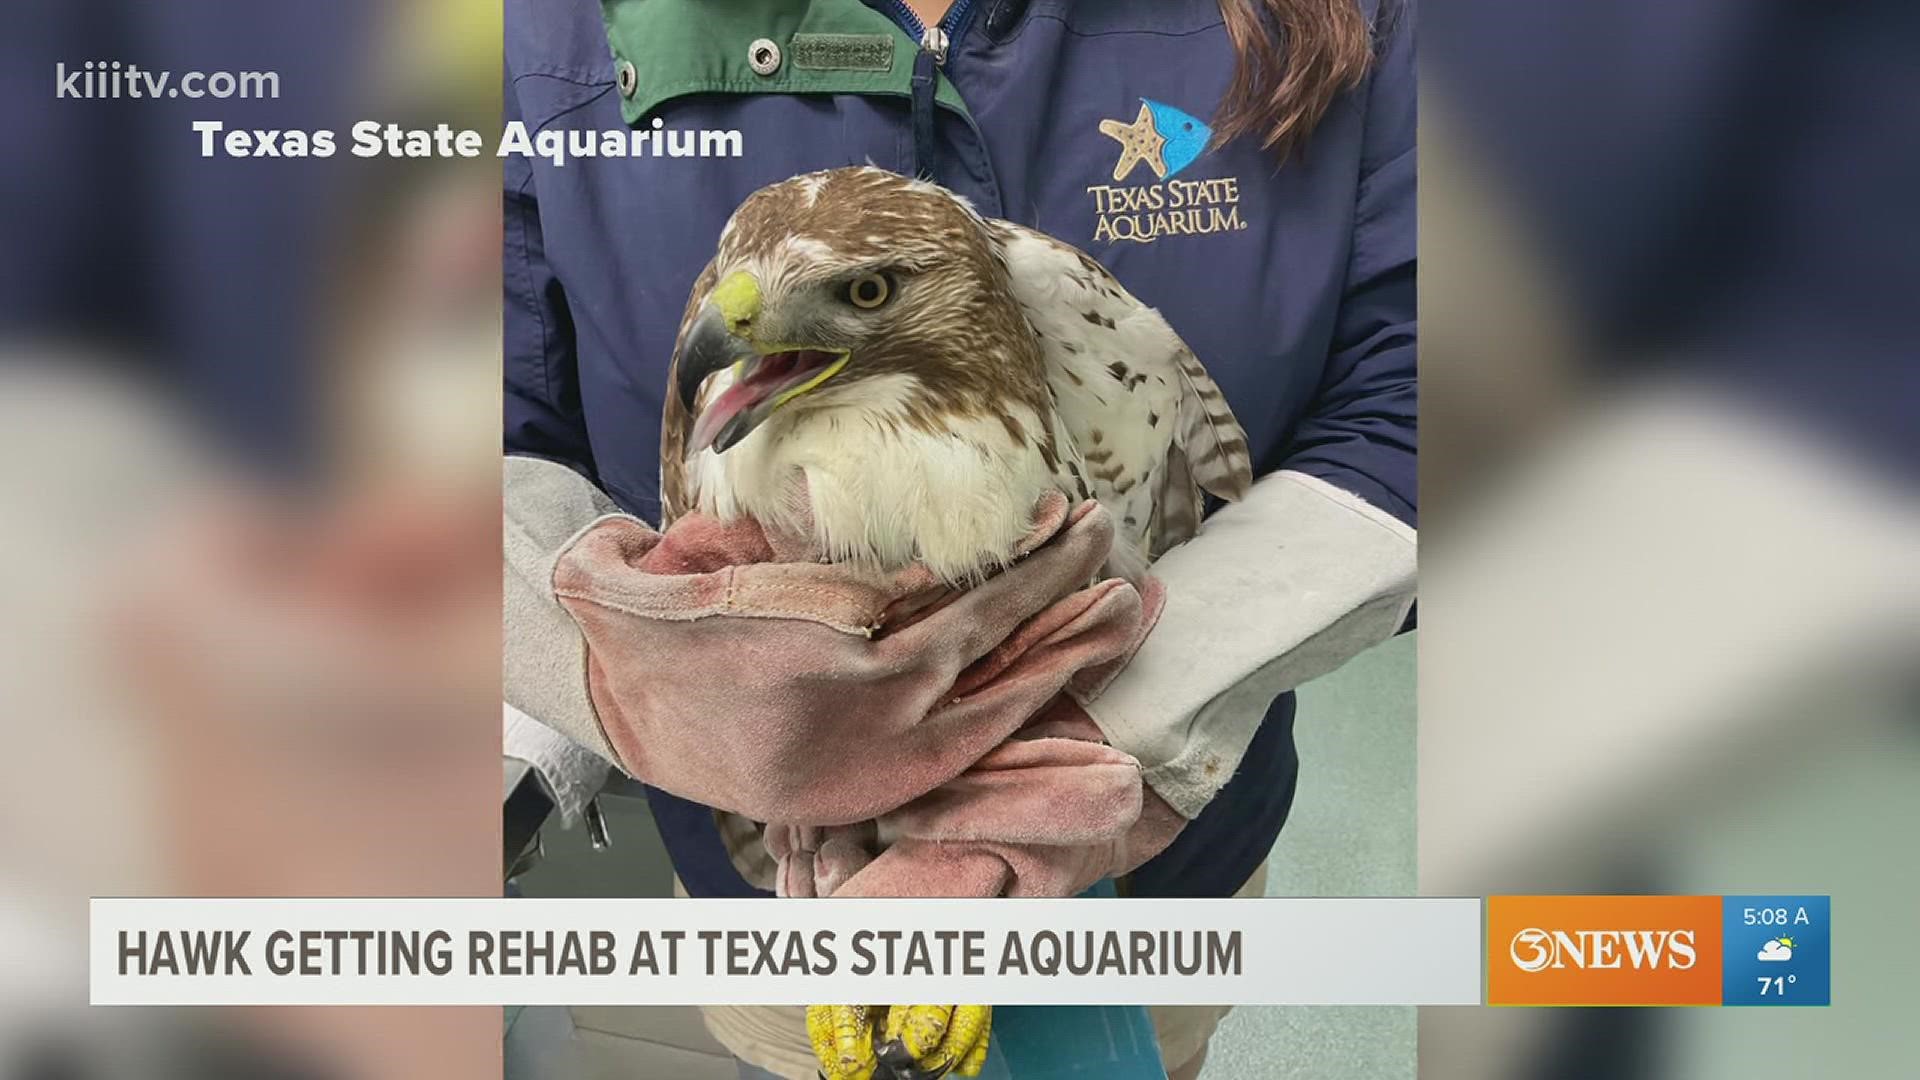 Coverage of wildlife rescue at Texas State Aquarium